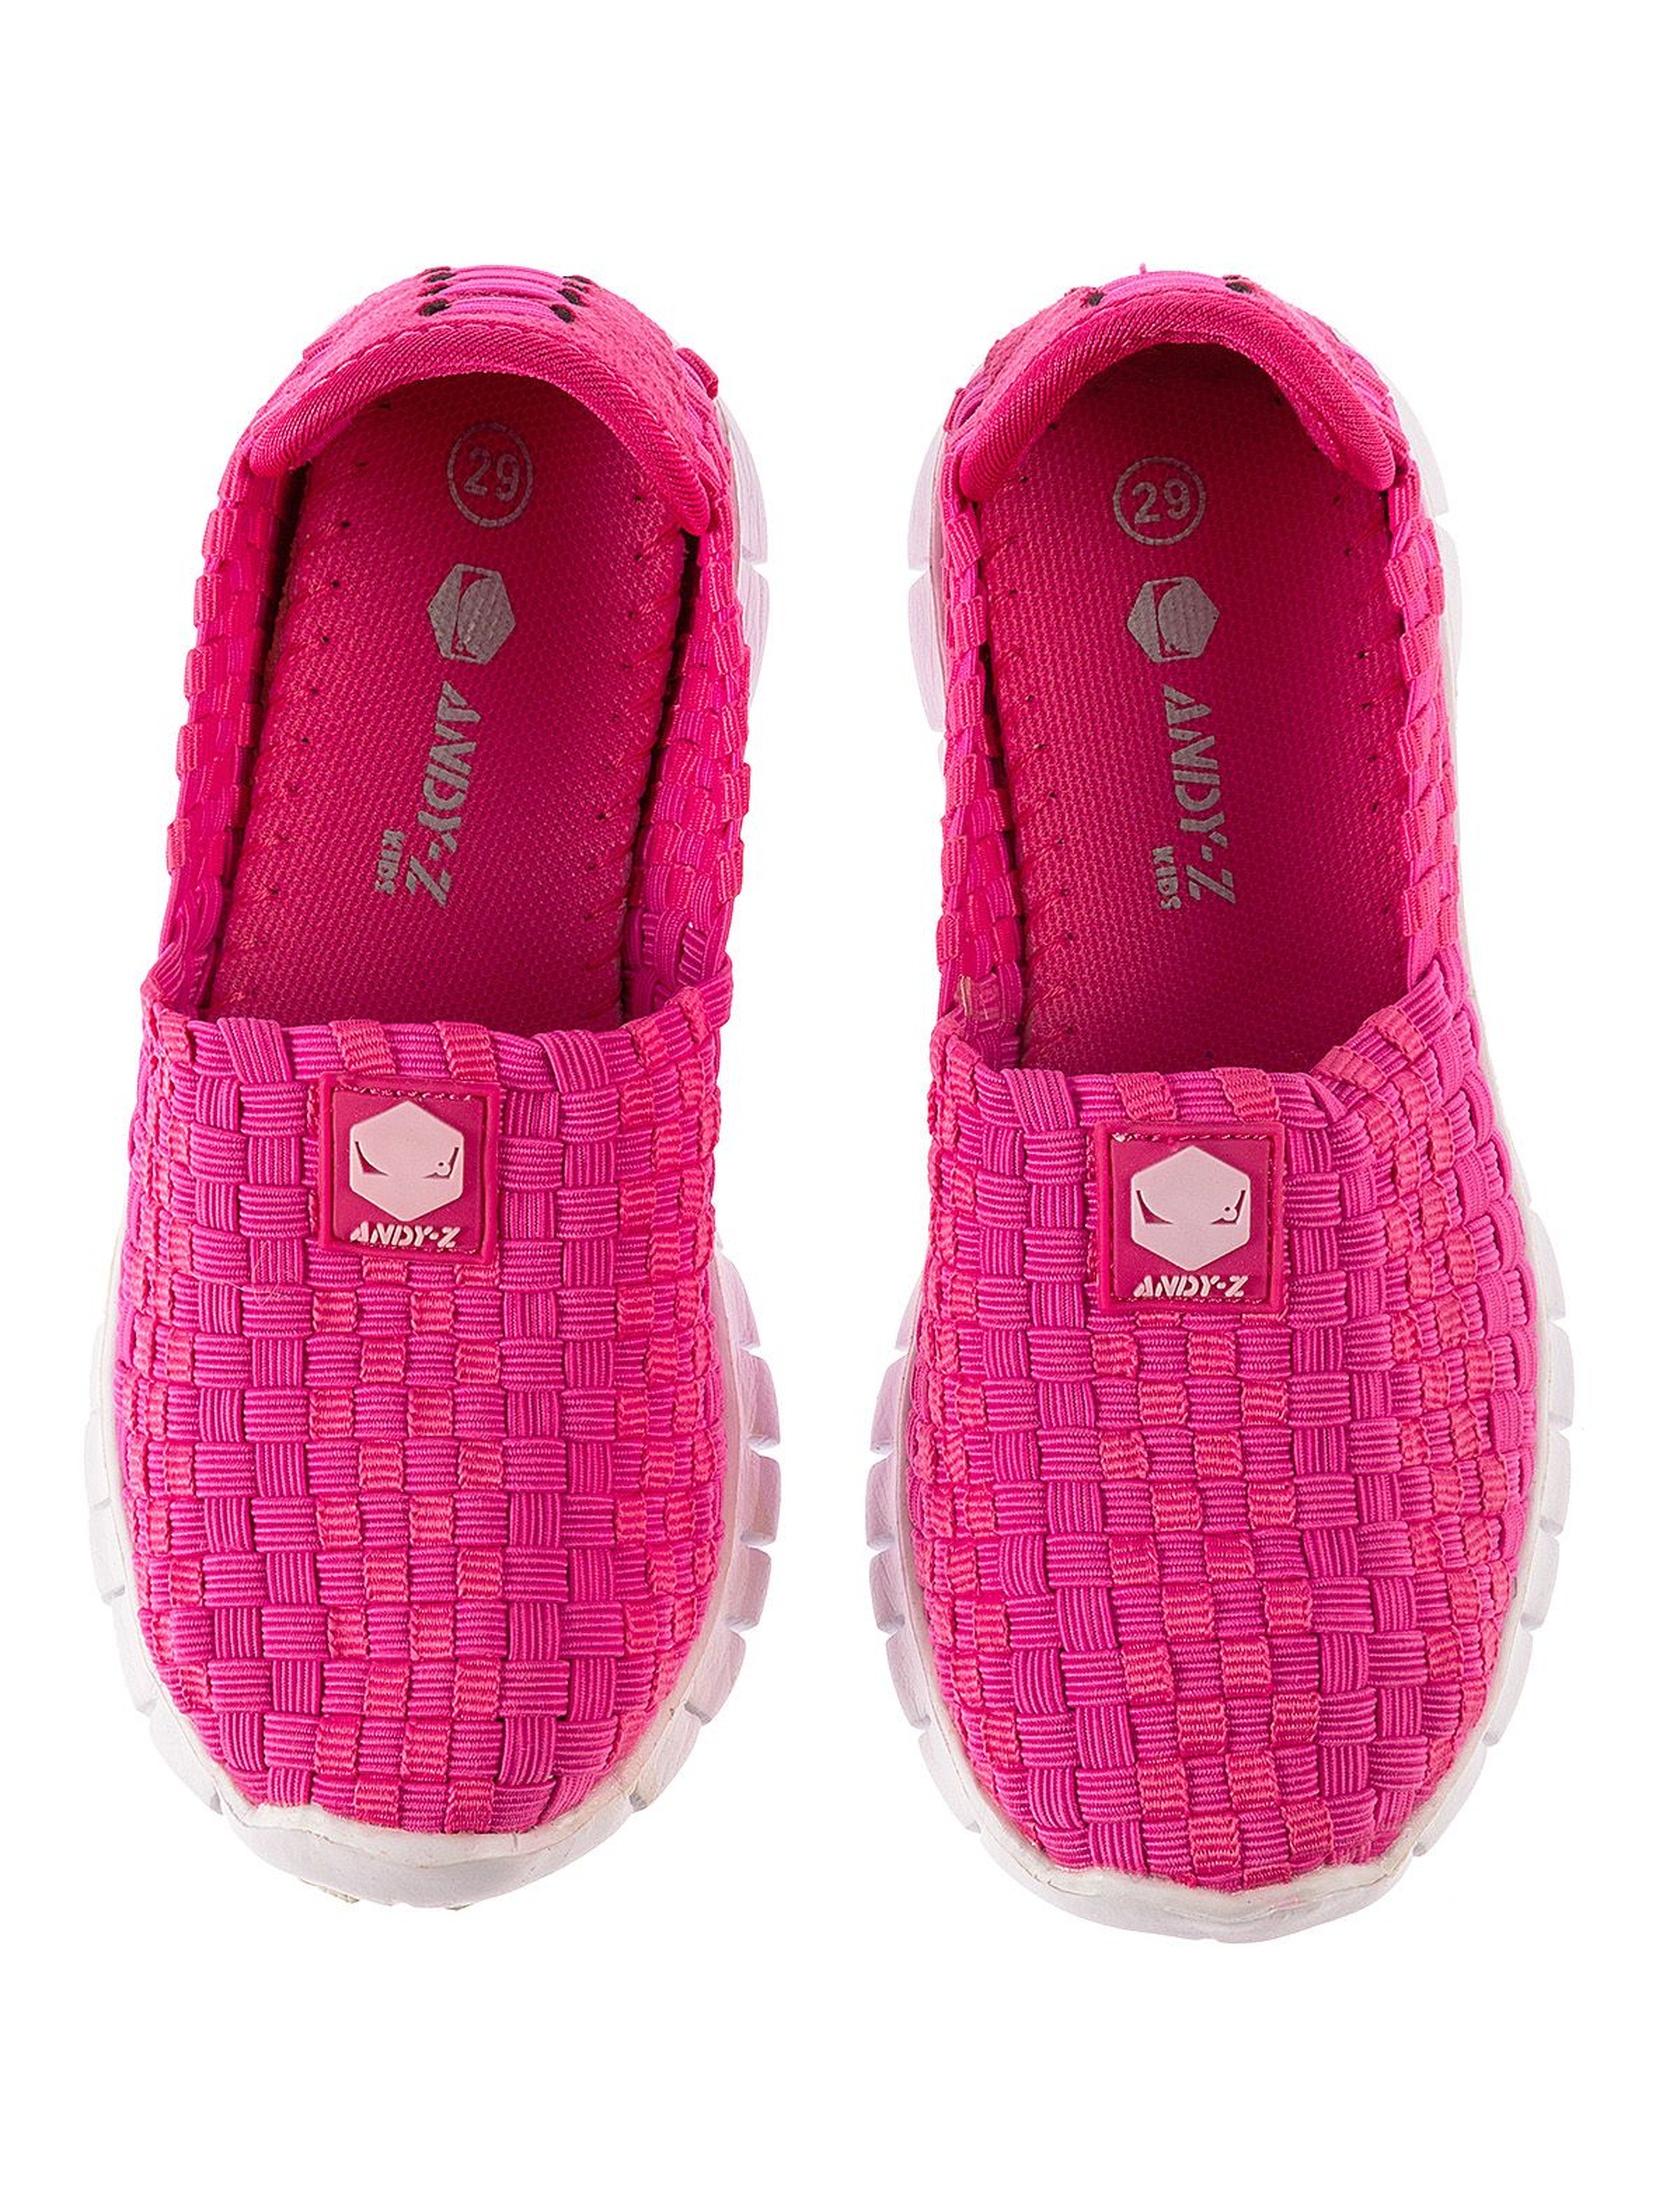 Buty sportowe dla dziewczynki- różowe